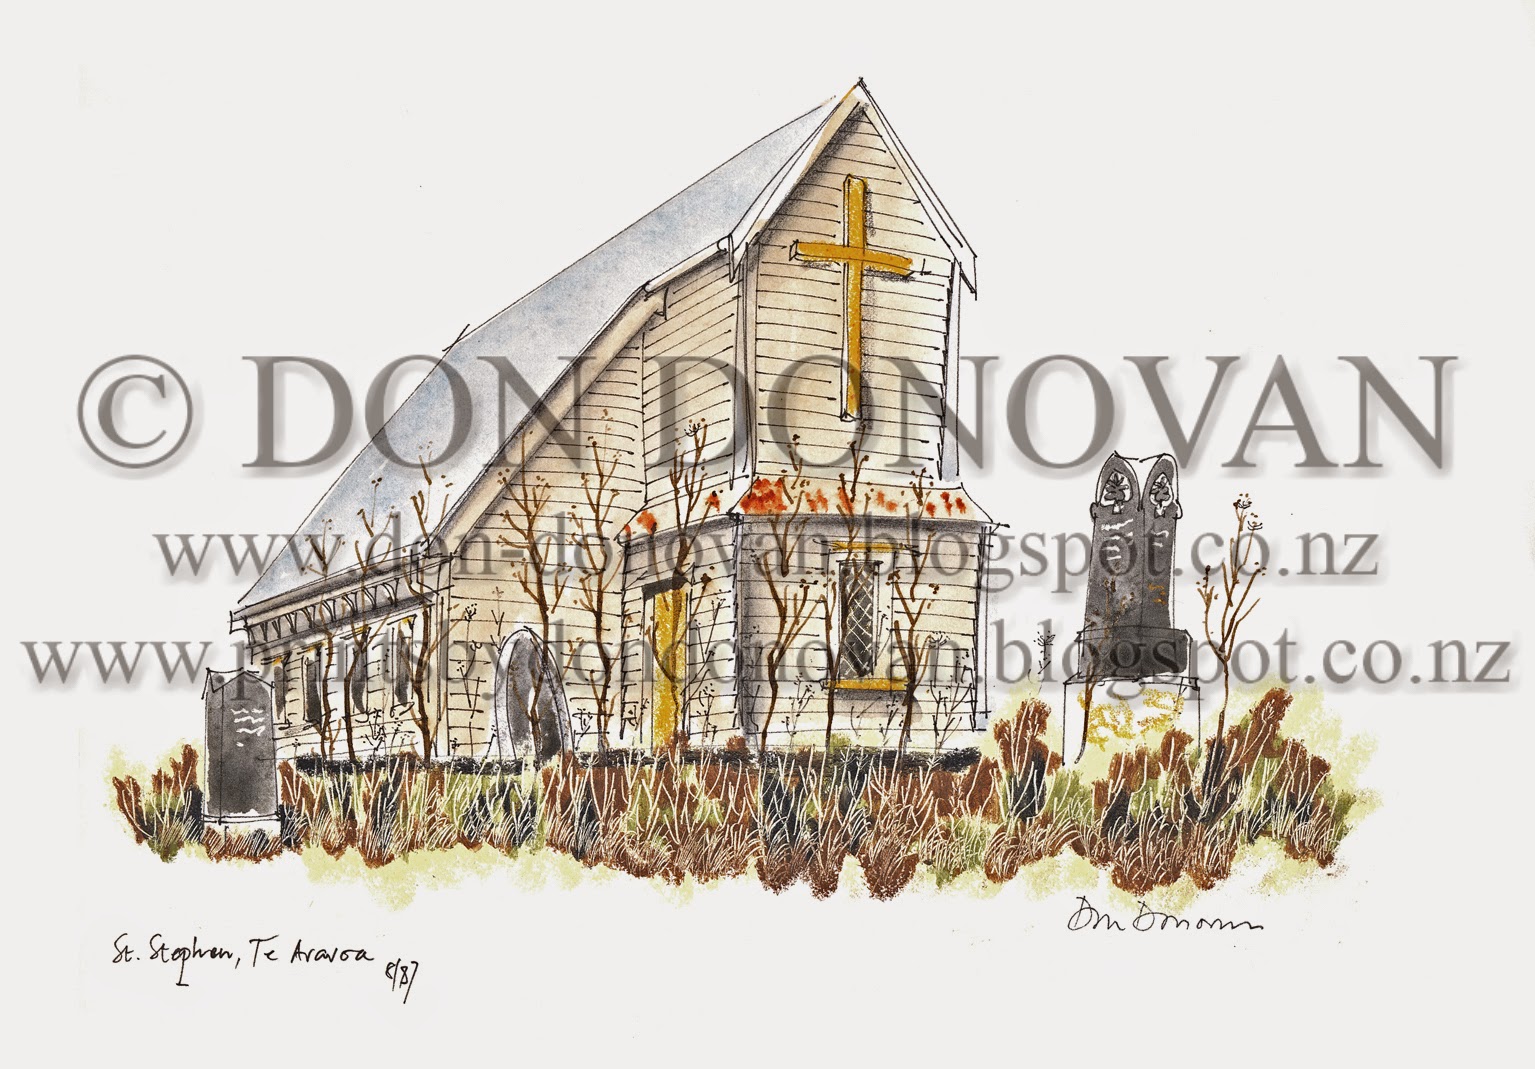 Prints by Don Donovan: St. Stephen's Church, Te Araroa in 1987. Prints ...